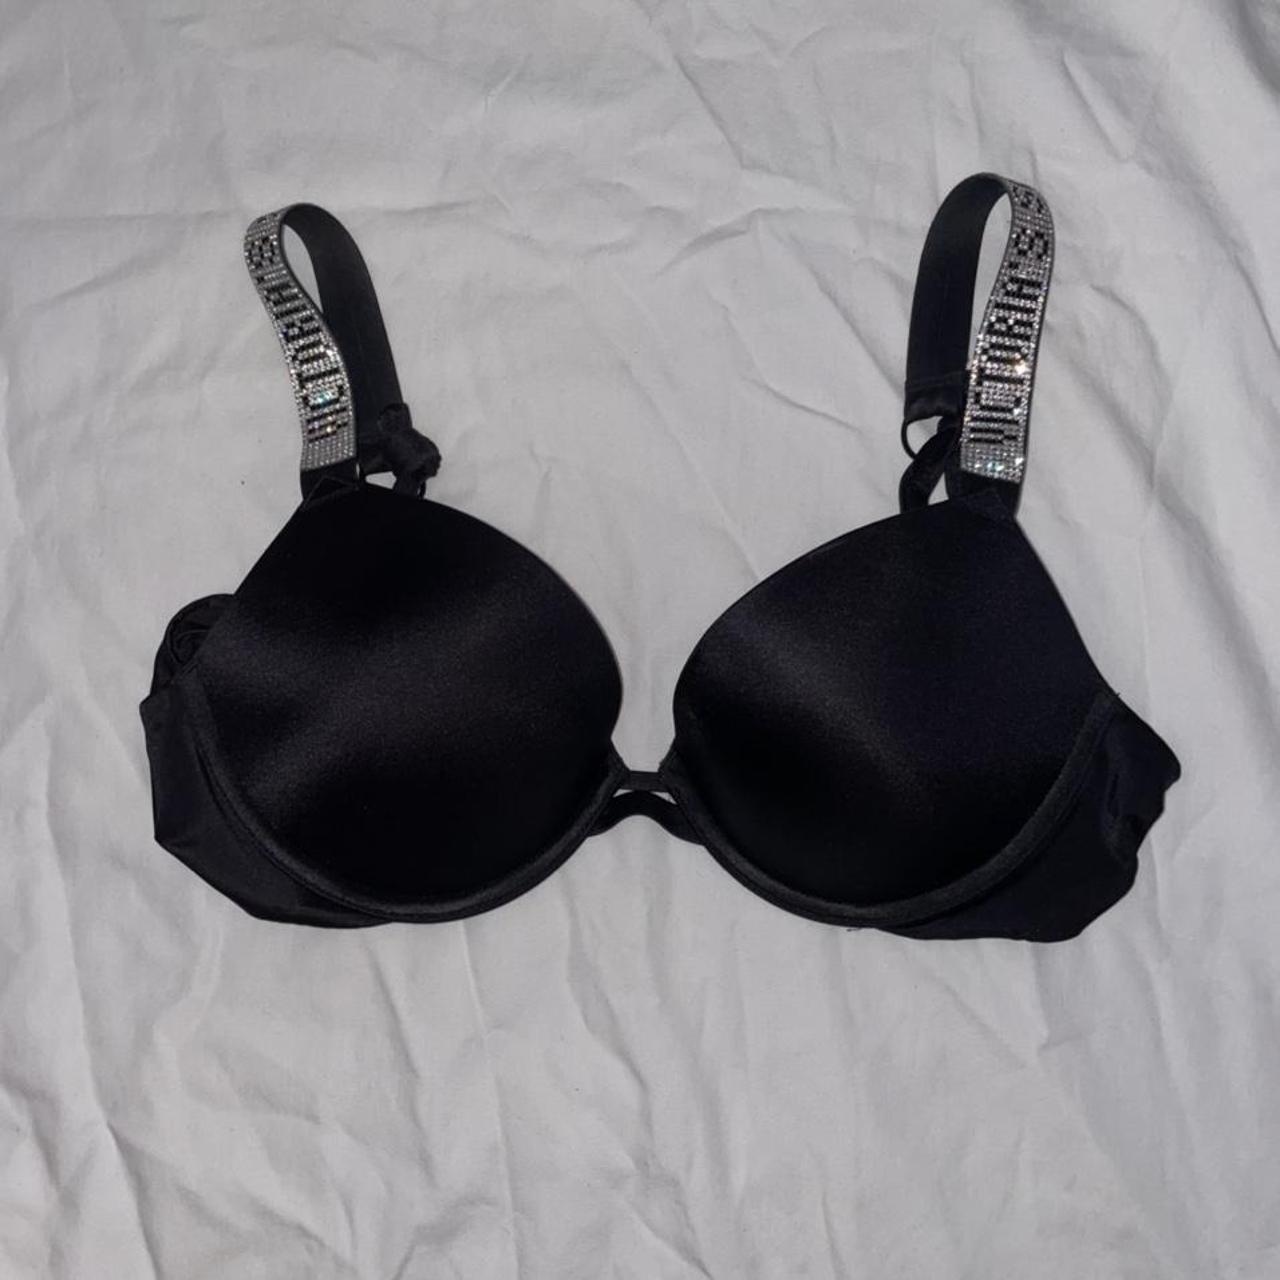 Victoria’s Secret bling out black bra. Bombshell